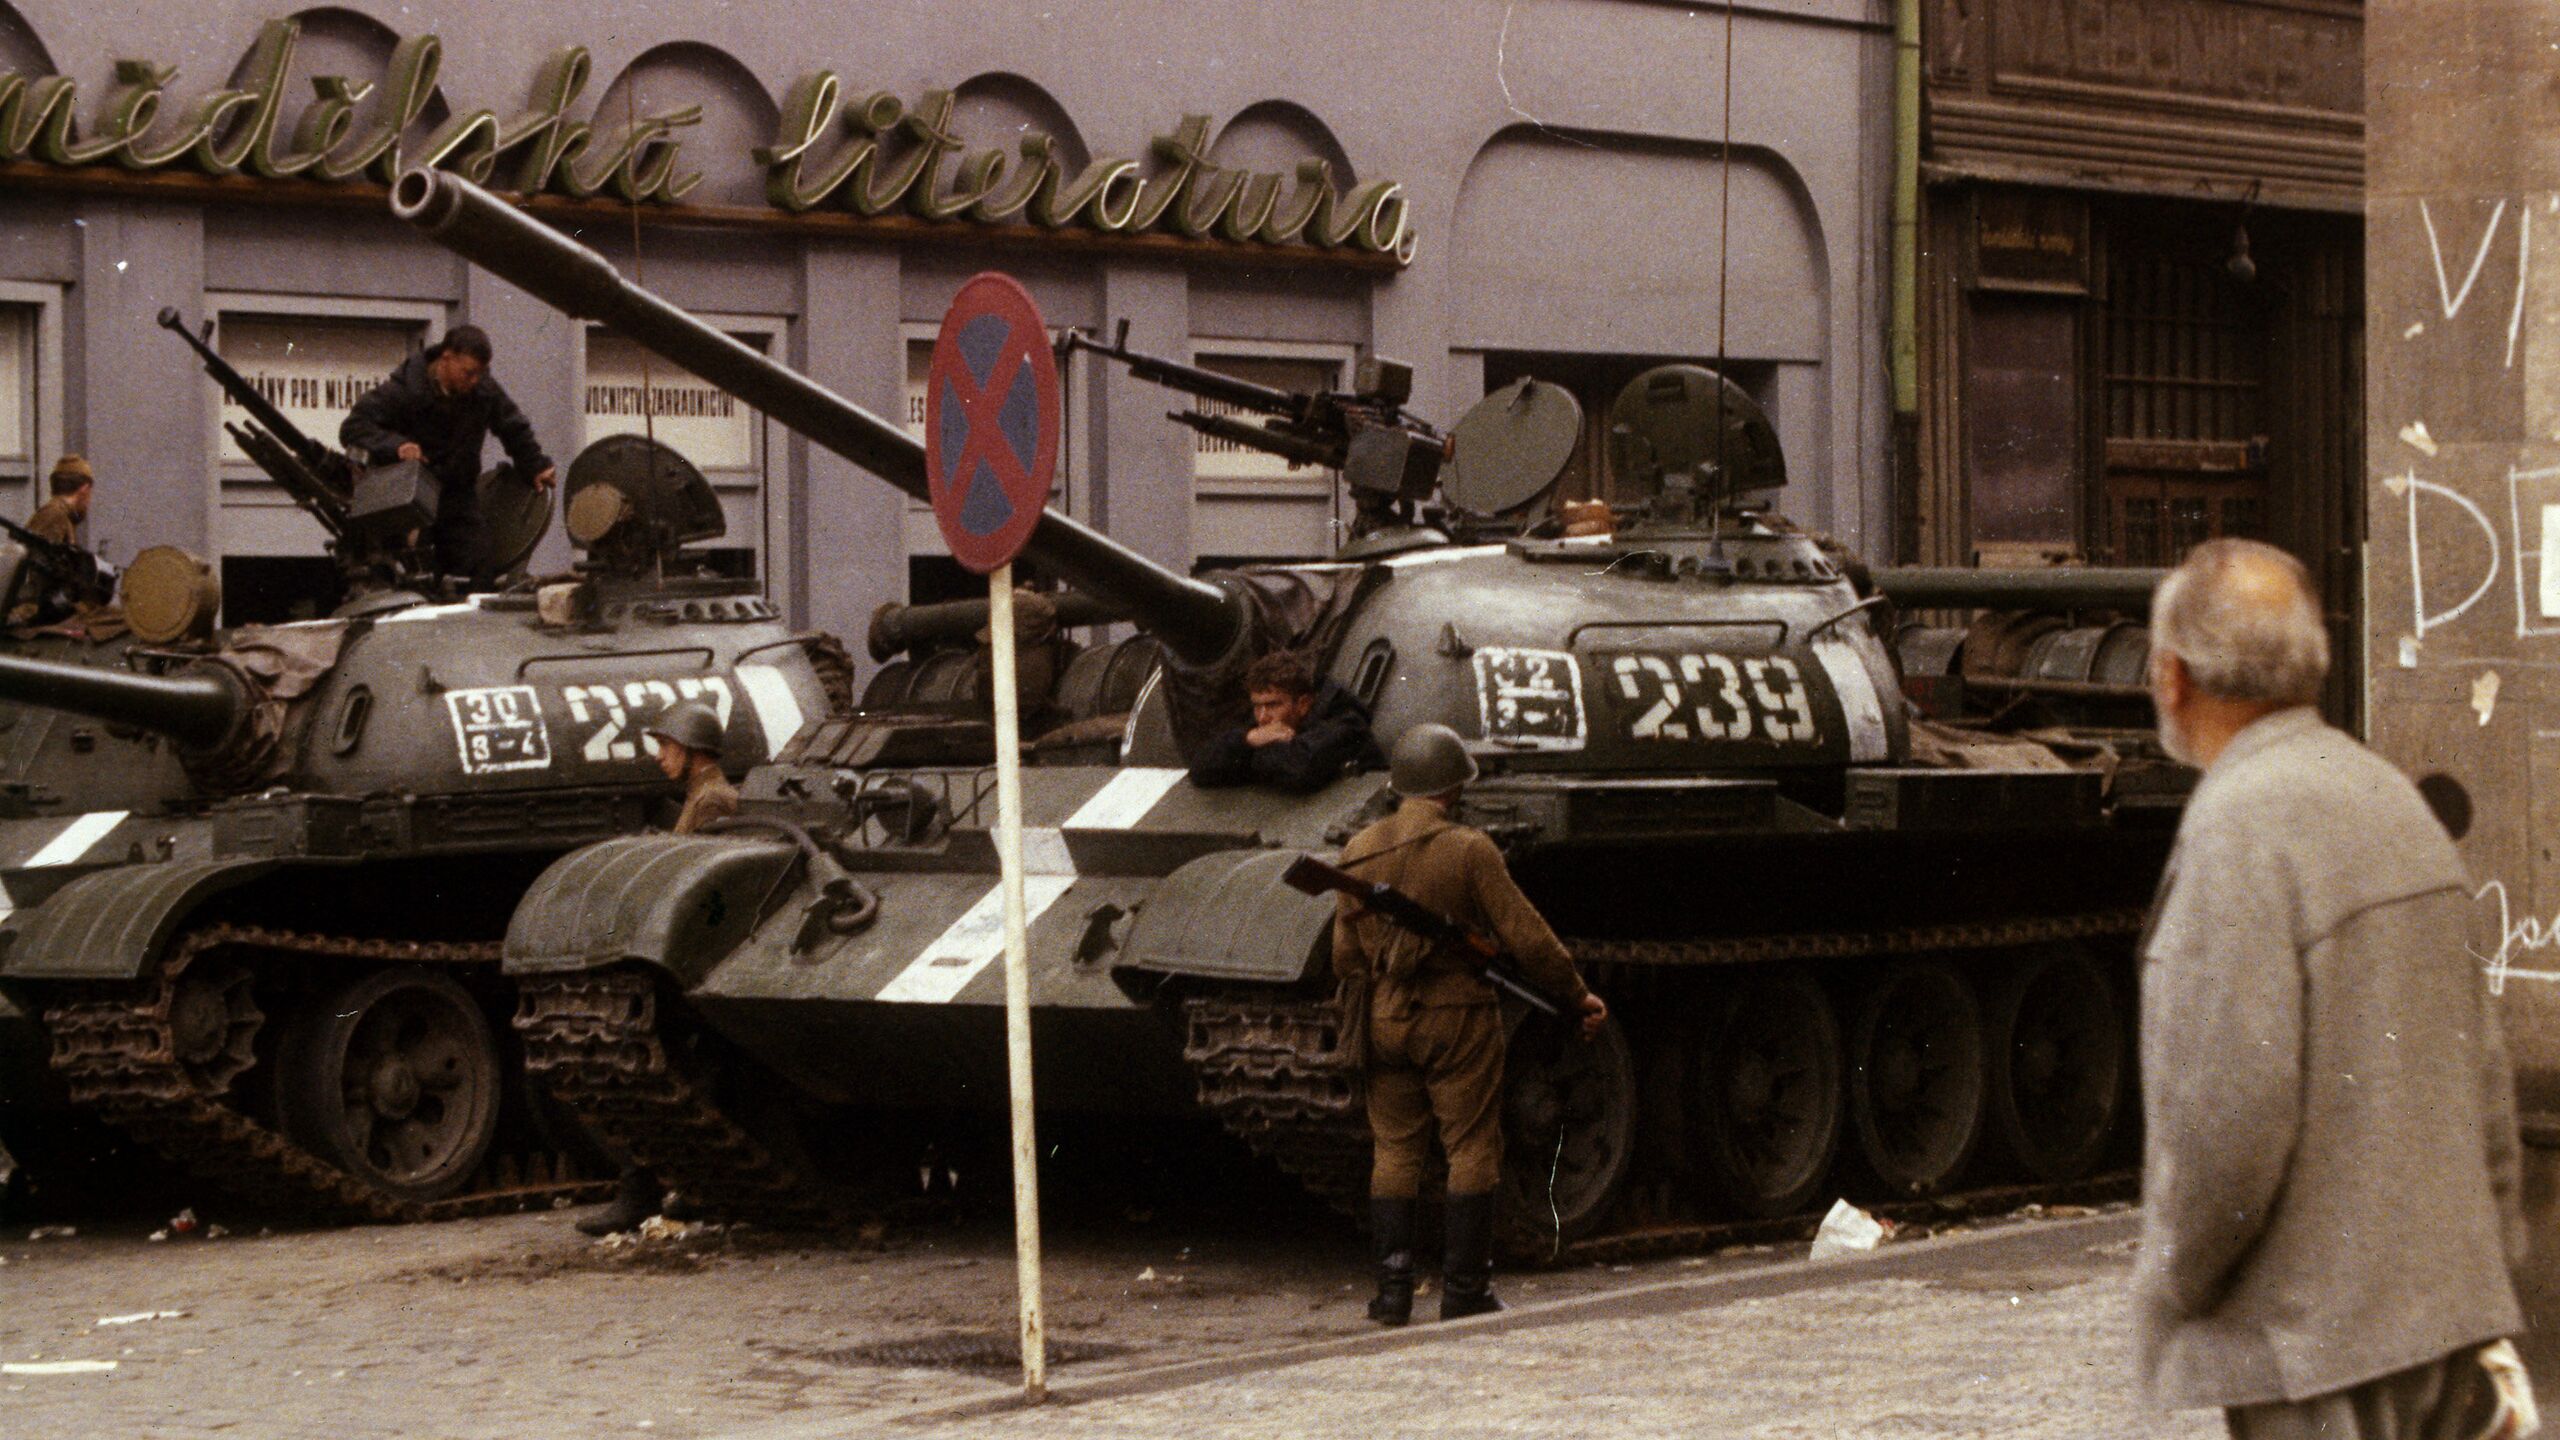 Чехословакия албания венгрия. Советские войска в Праге Чехословакия 1968. Солдаты ГДР В Чехословакии в 1968.